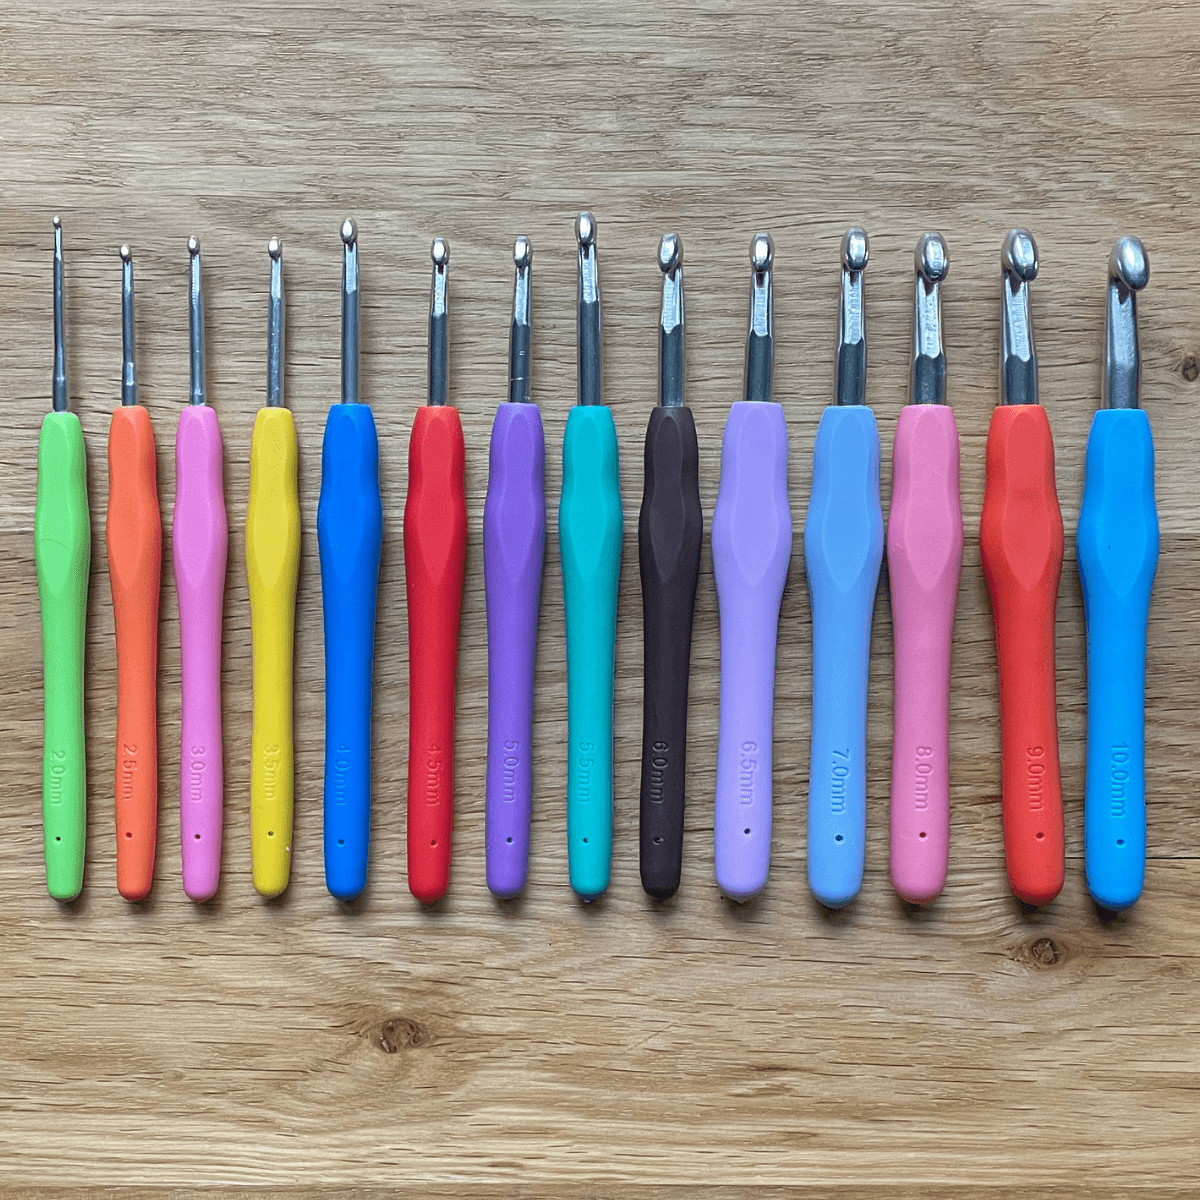 Crochet en Silicone - Multicolore - Tailles de 2 mm à 10 mm LilyWools - Amigurumis et Crochets